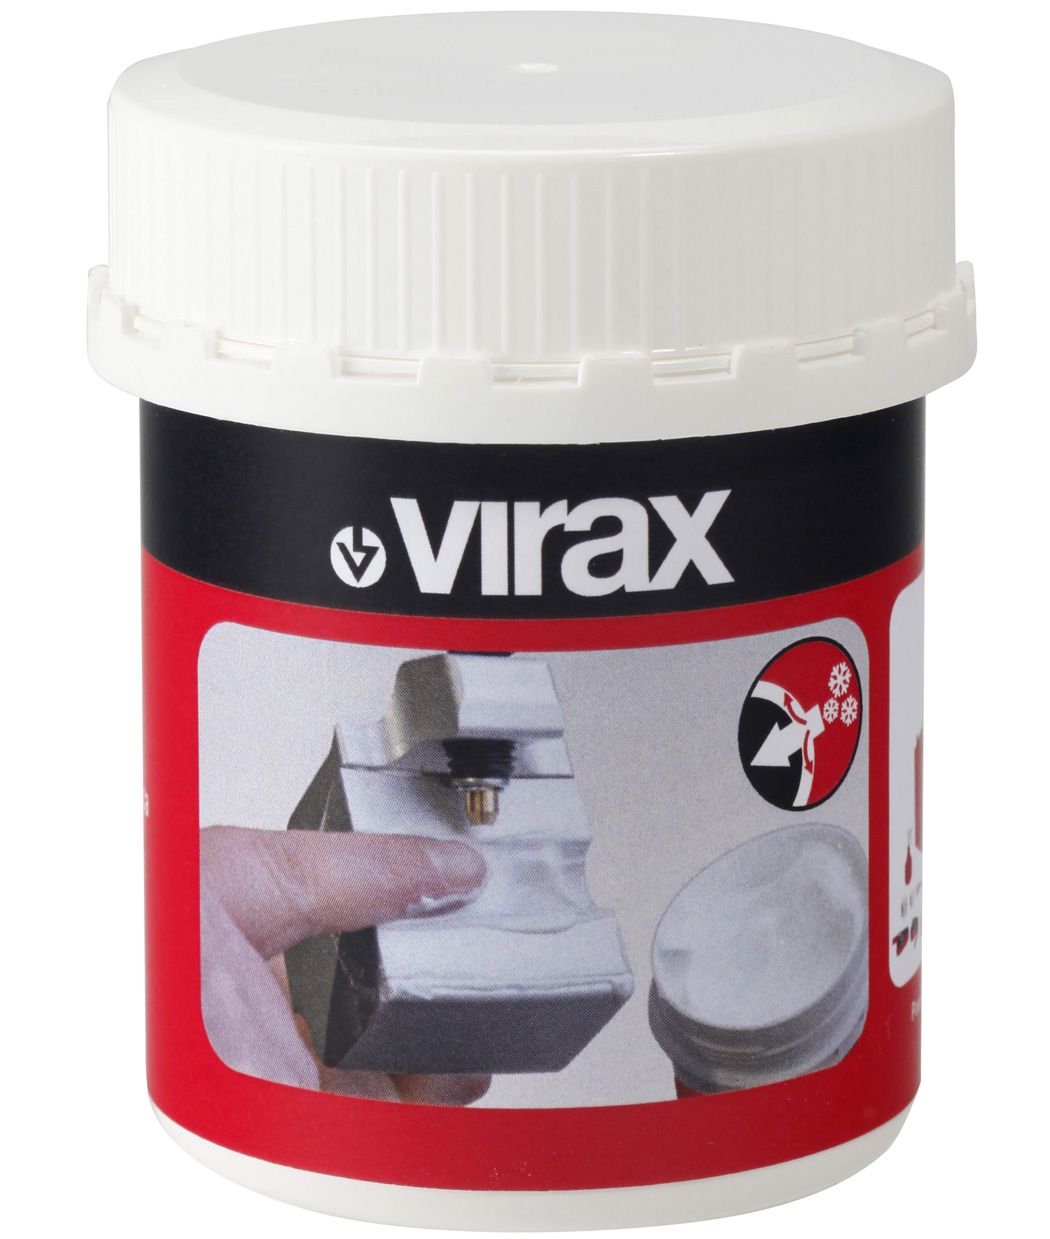 Cintreuse hydraulique électrique Virax pour tubes gaz ou